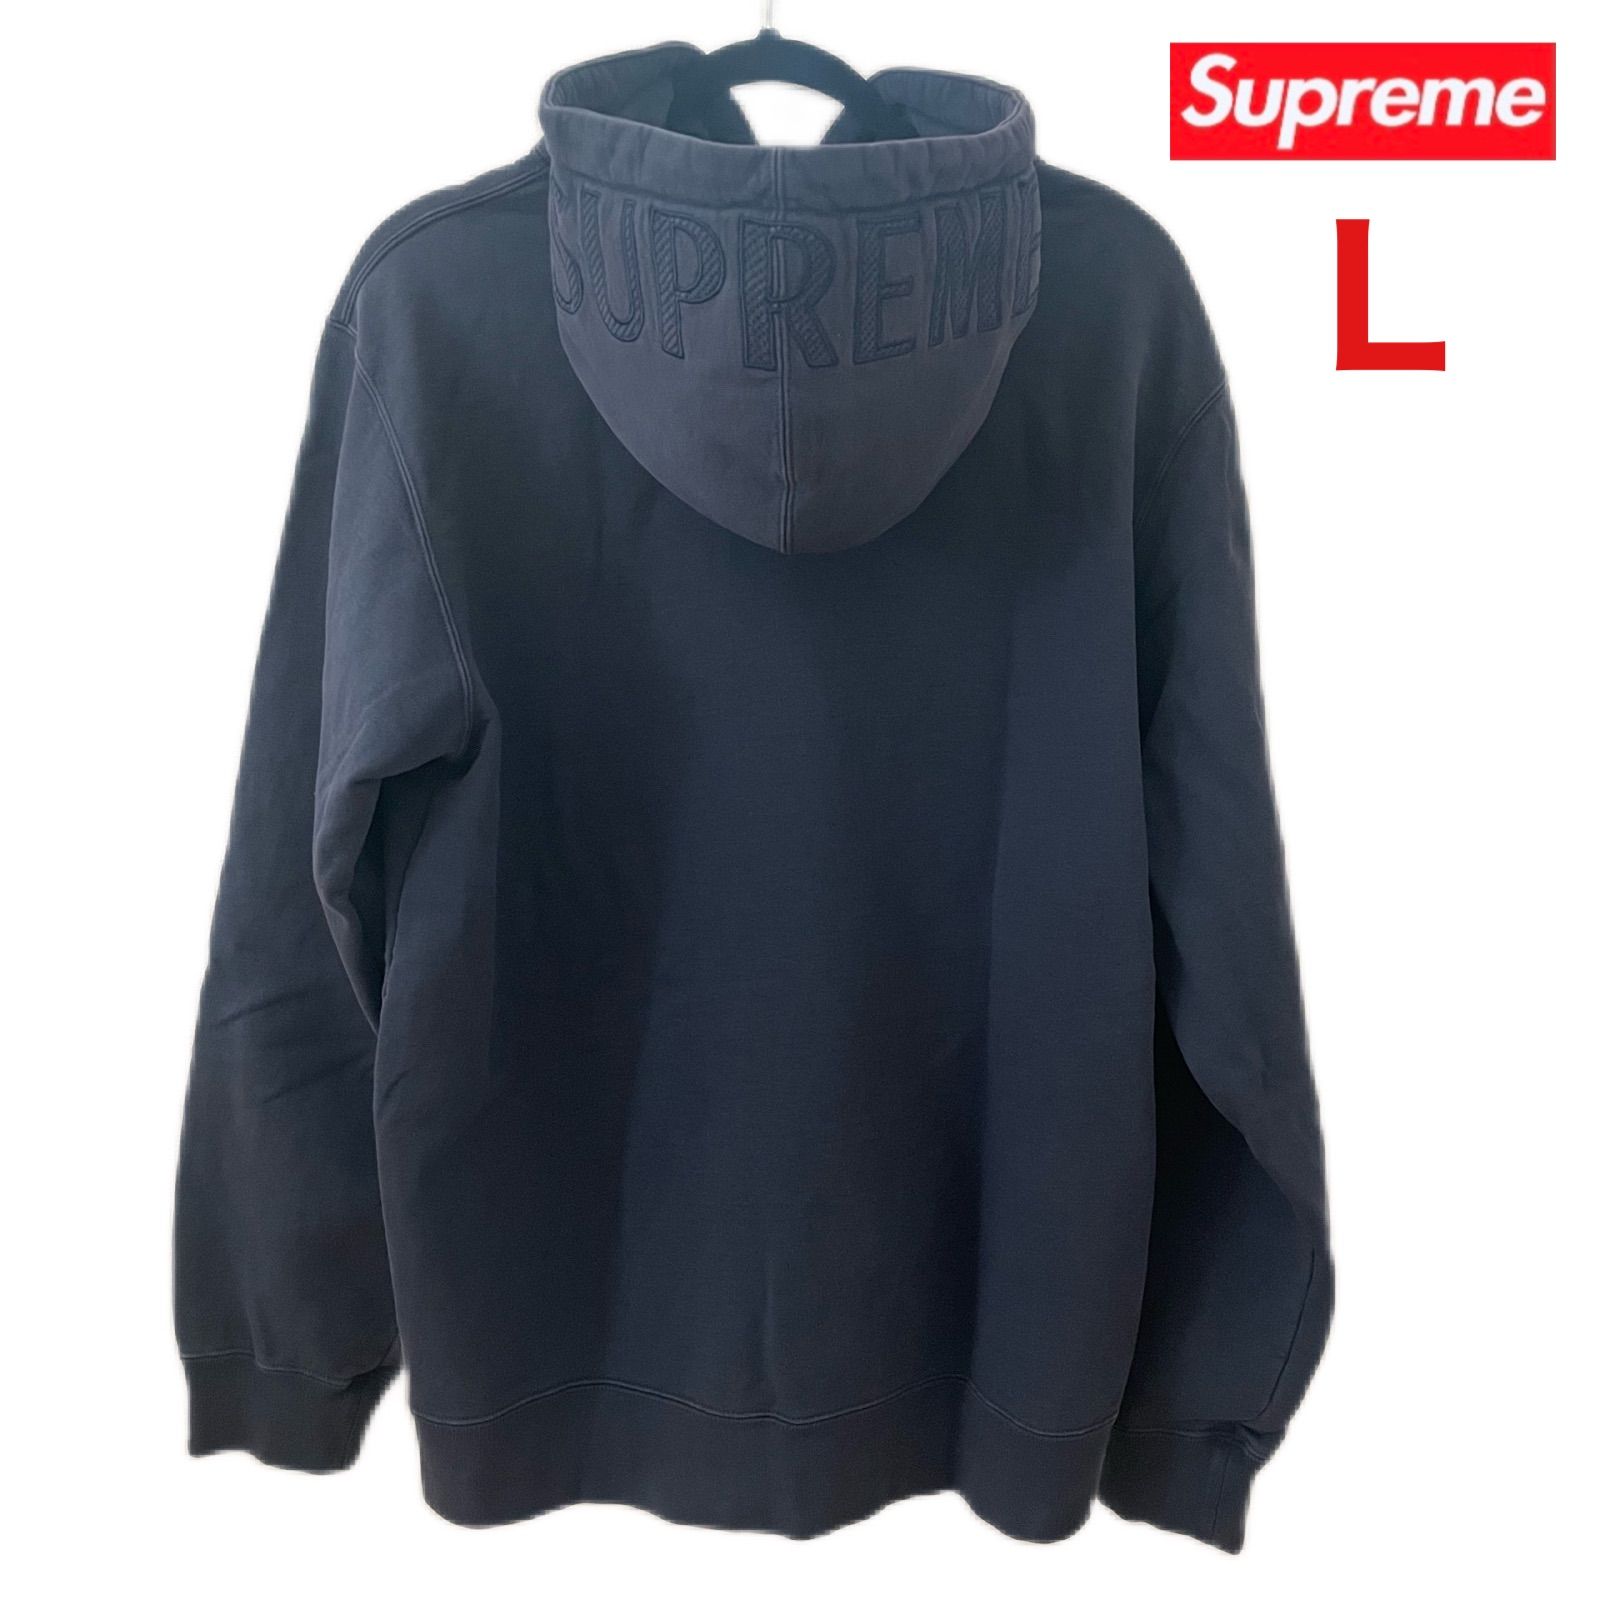 Supreme 20ss Overdyed Hooded Sweatshirt